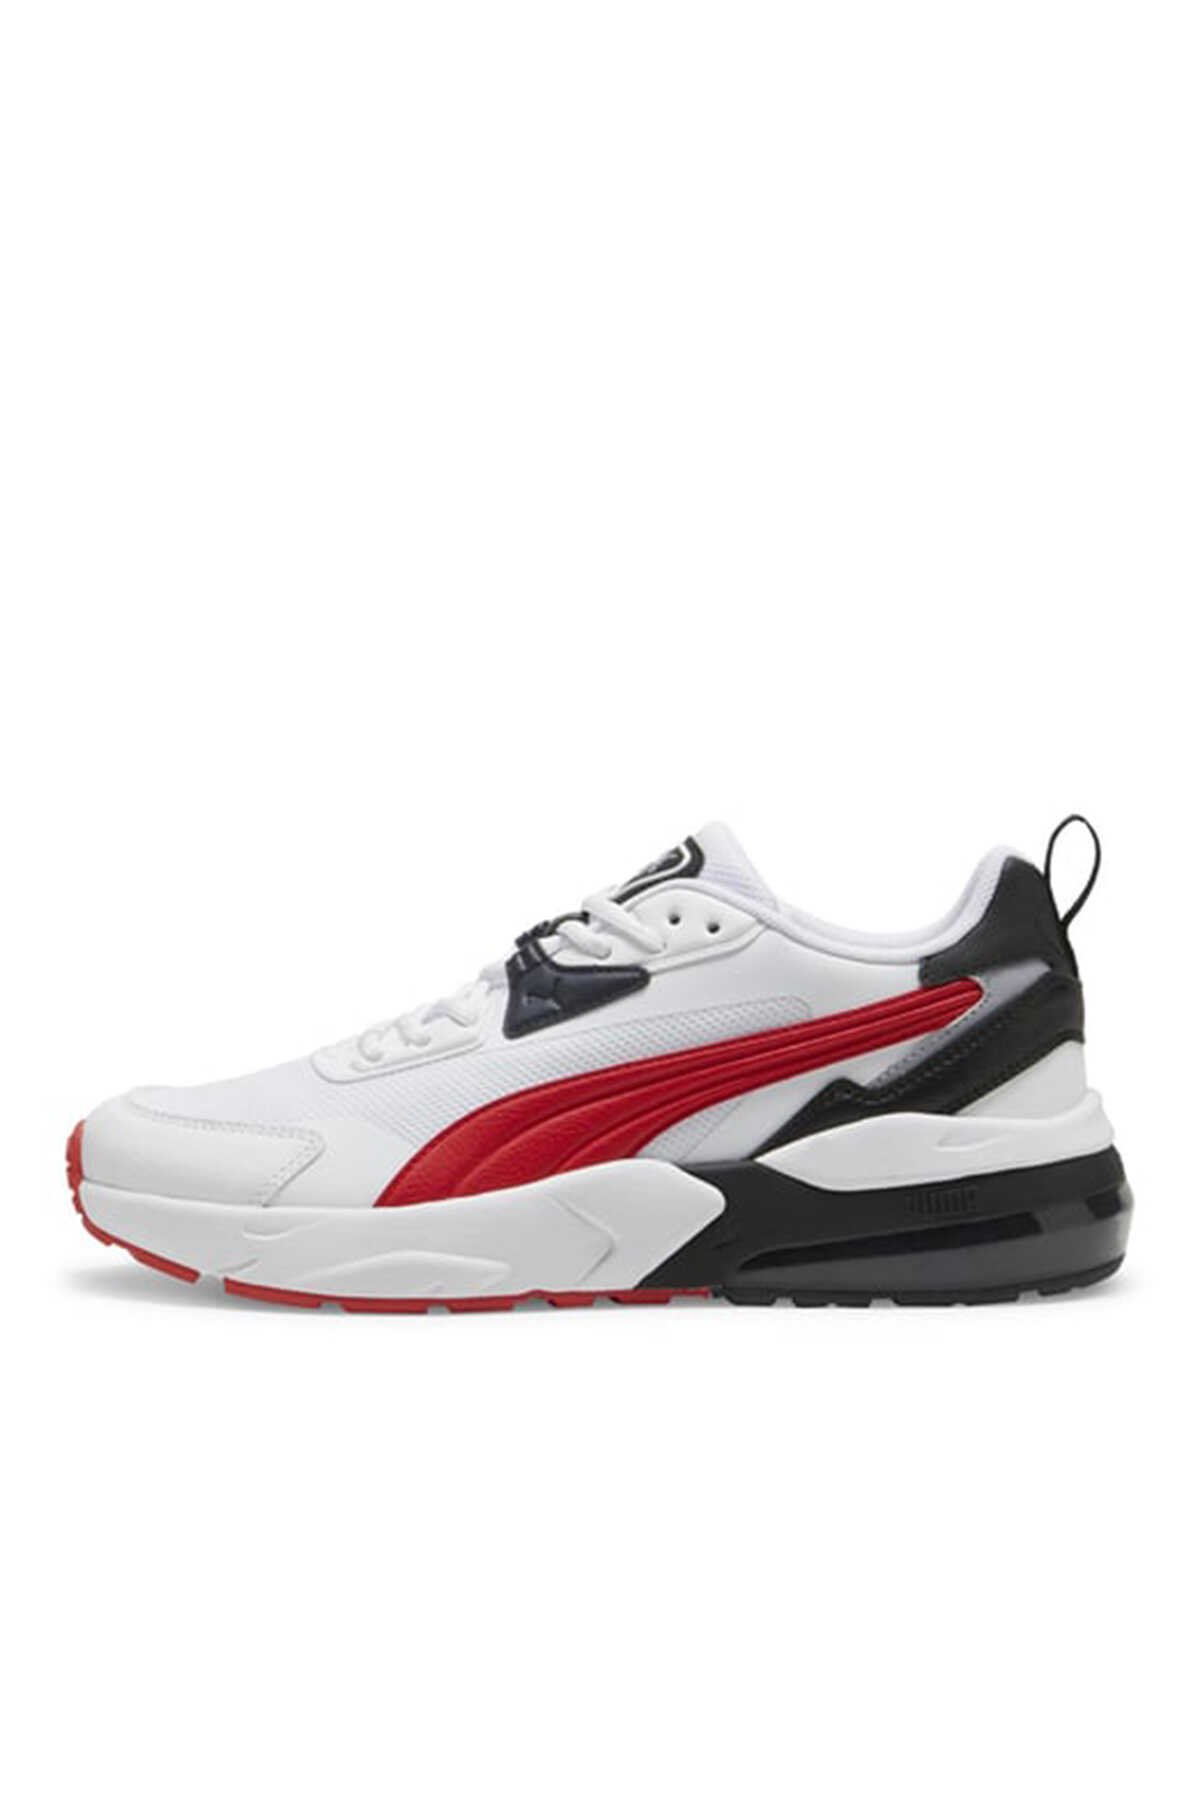 Puma - Puma Vis2K Erkek Sneaker Ayakkabı Beyaz / Kırmızı